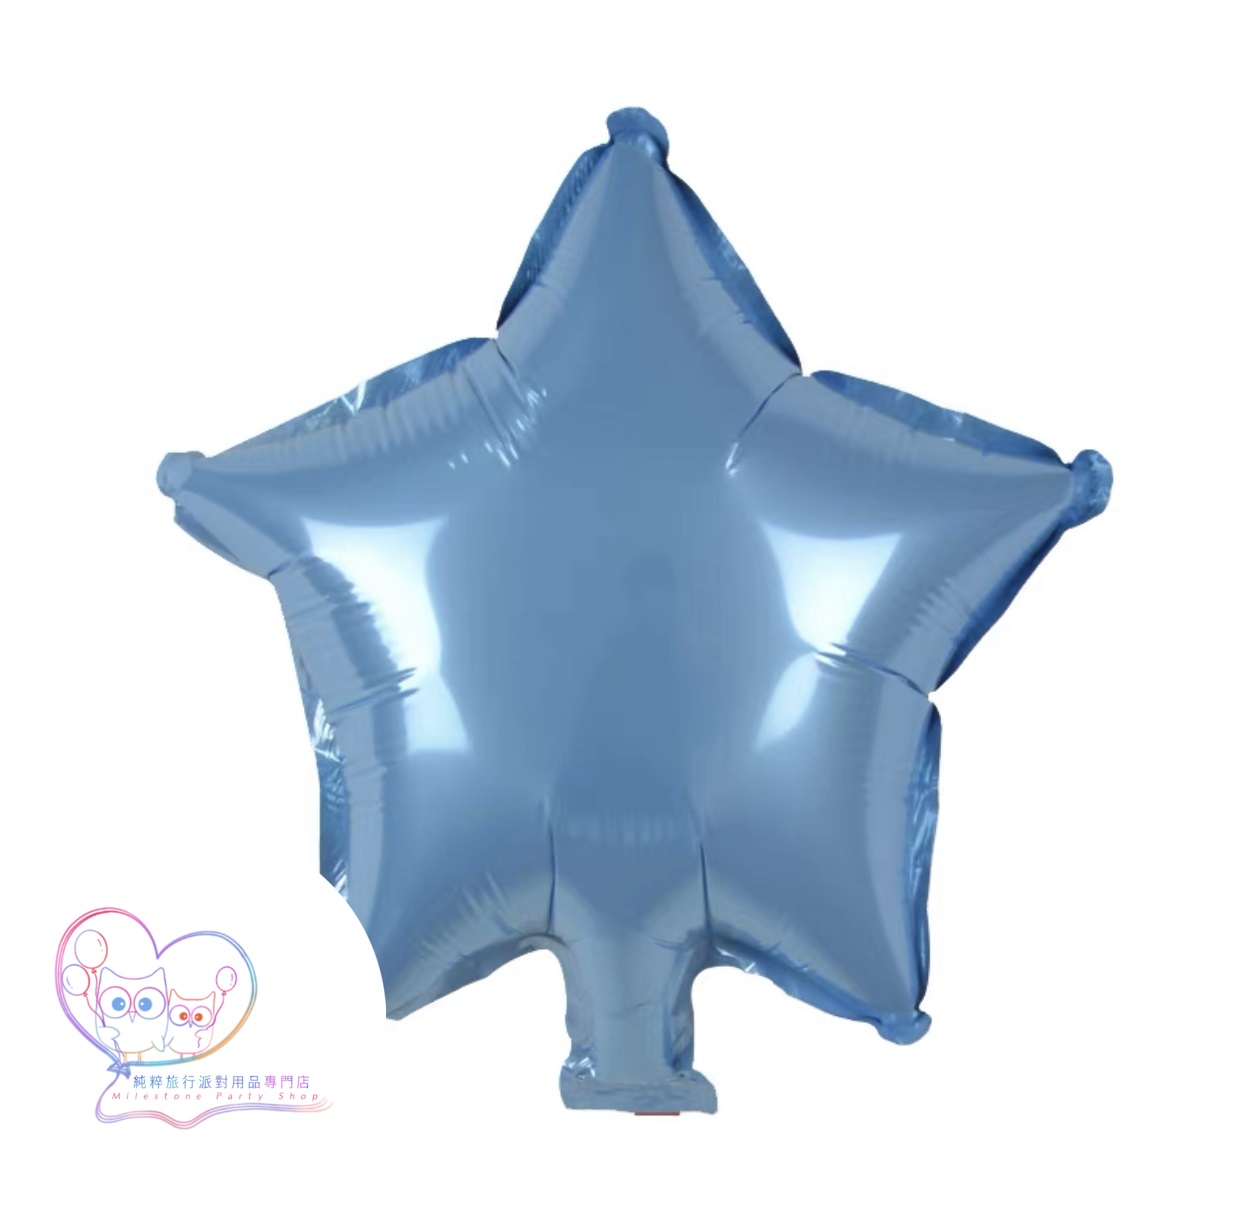 10吋星星鋁膜氣球 (粉藍色) 10S5